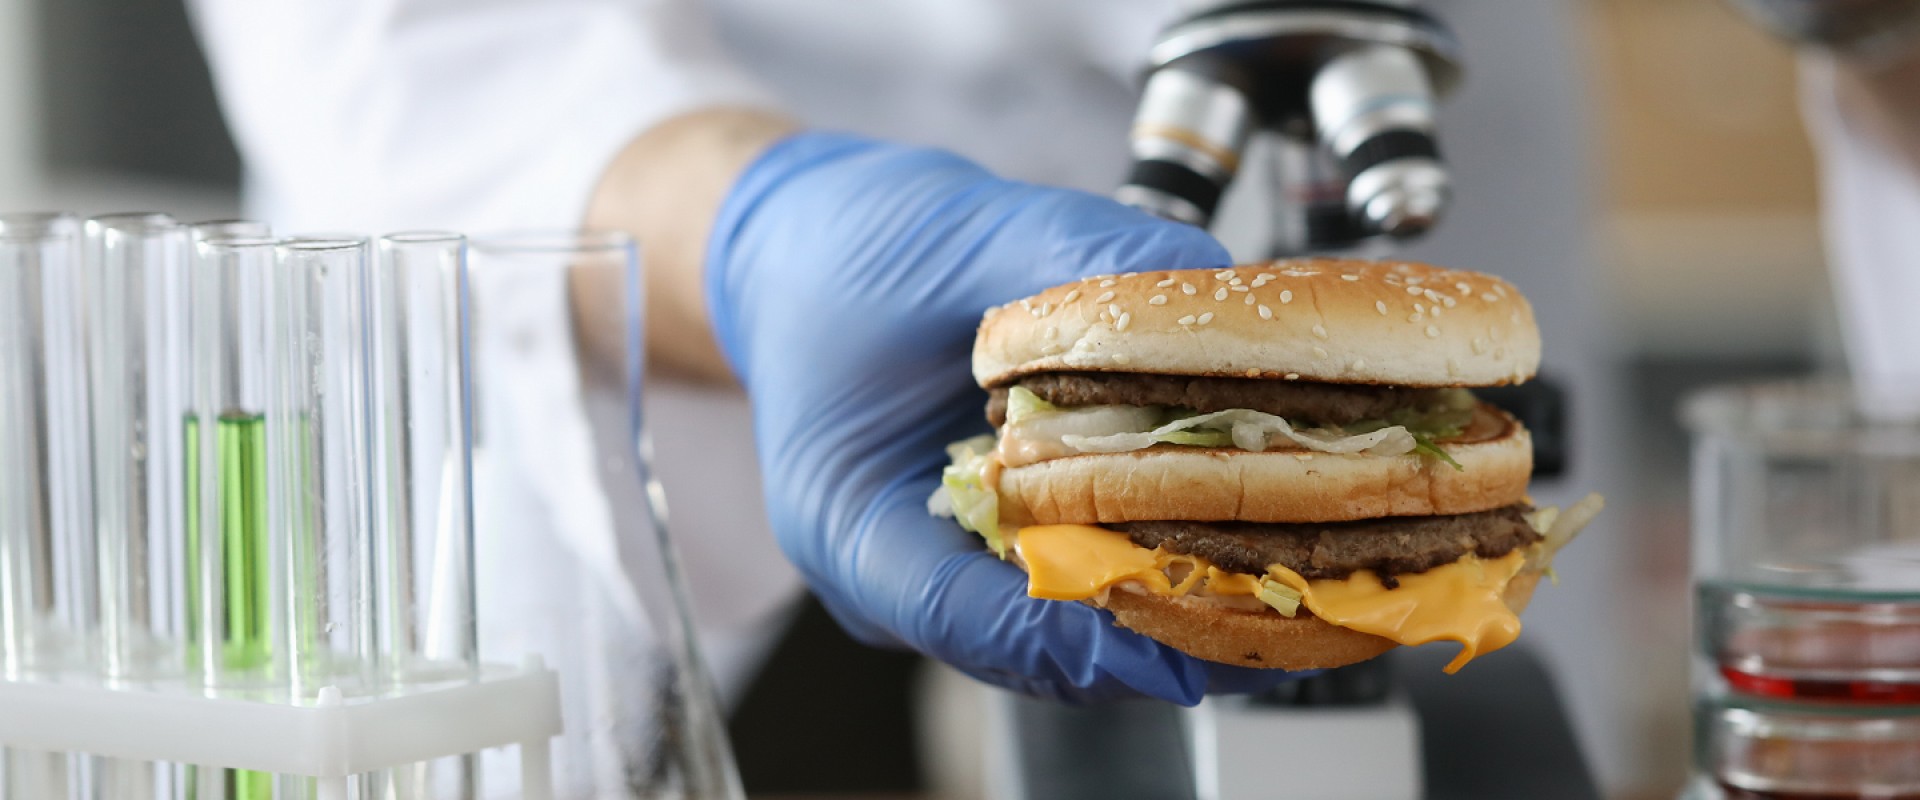 Анализ и оценка рисков пищевой безопасности в ресторане